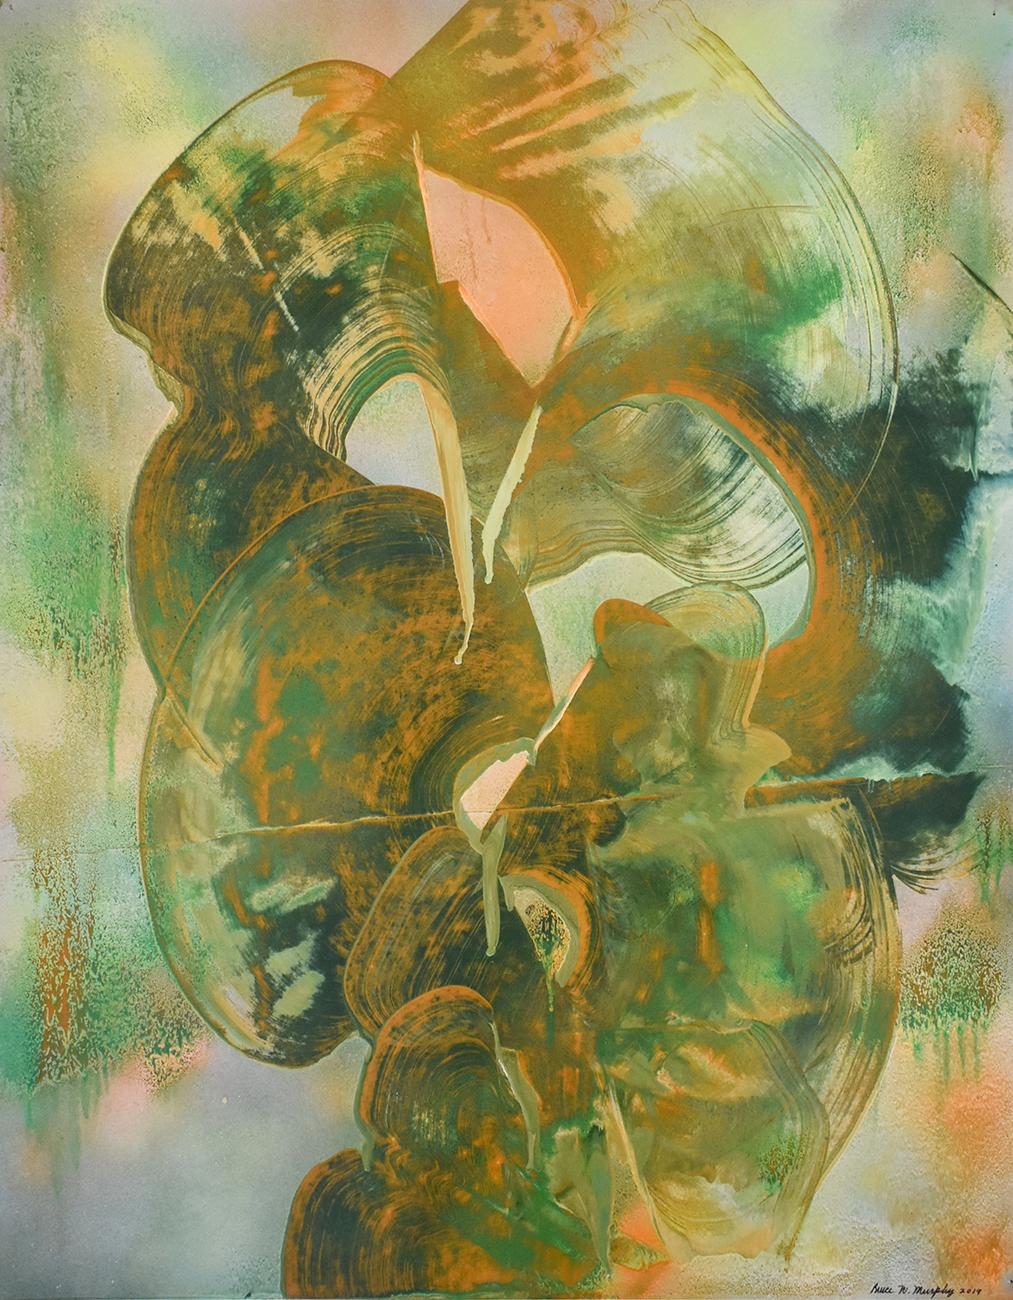 Lady with a Frog (peinture abstraite sculpturale sur papier en vert et ocre)